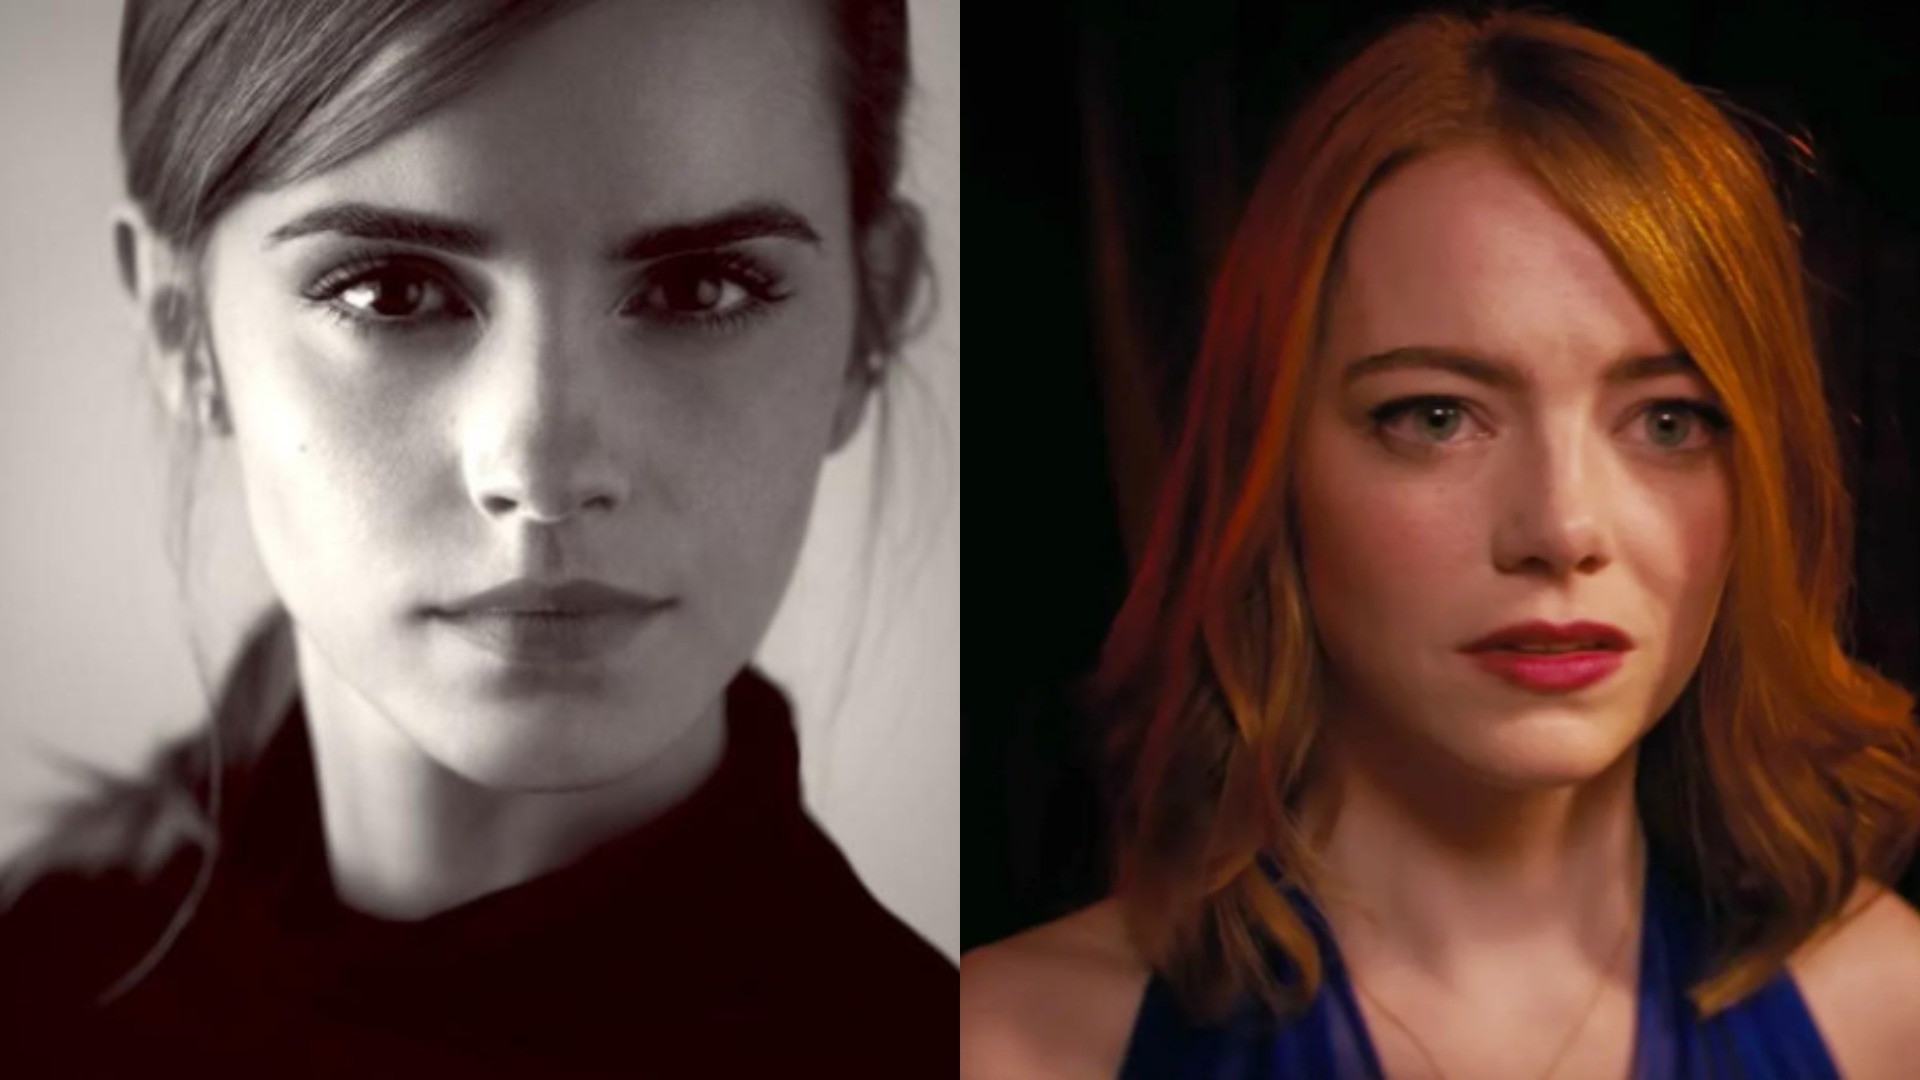 Маколей Калкин в «Титанике», а Эмма Уотсон в «Ла-Ла Ленде»: актеры, которые могли бы сыграть в культовых фильмах, но что-то пошло не так